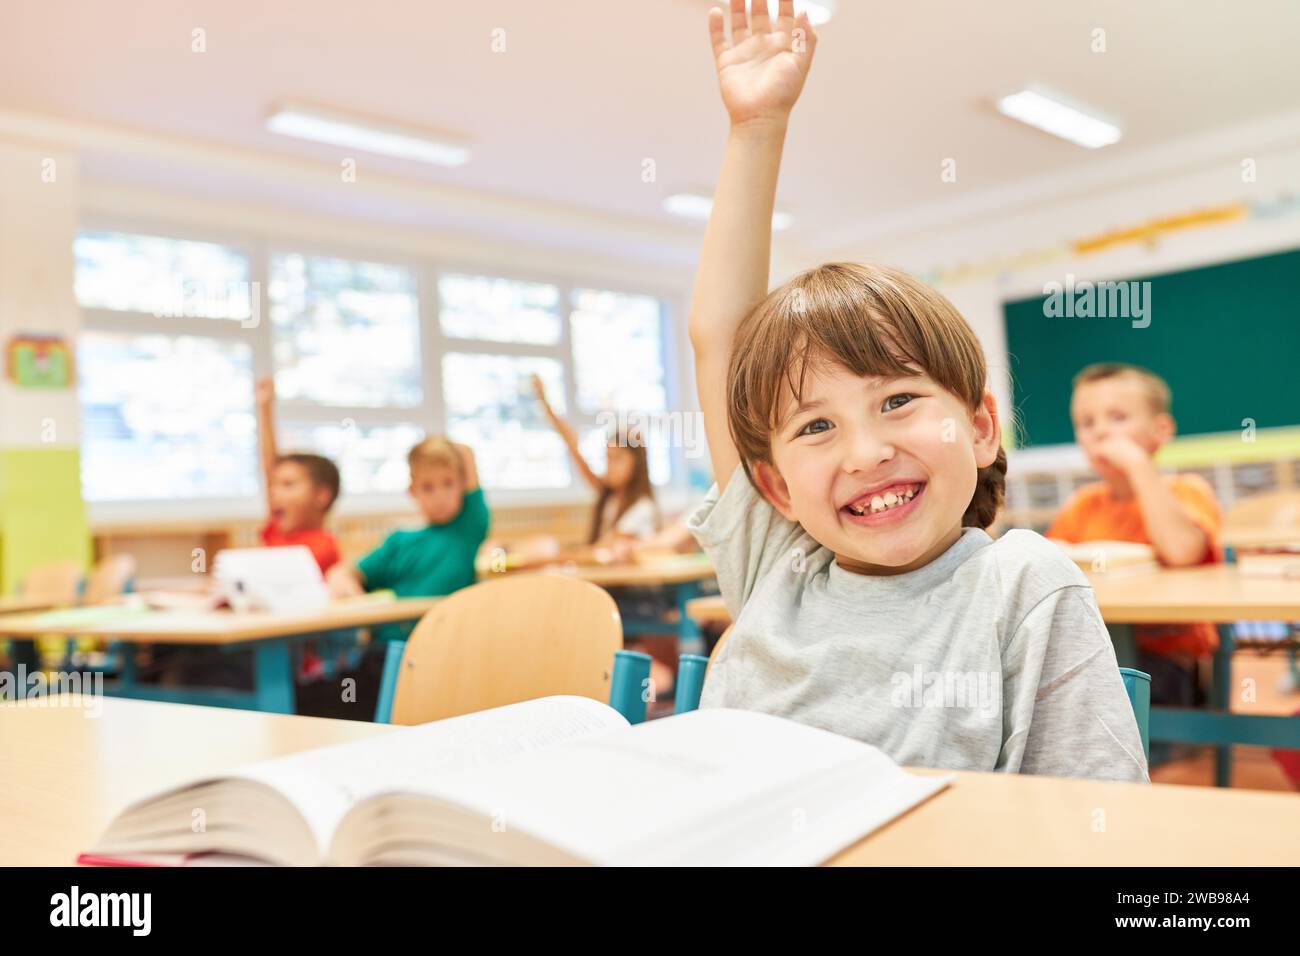 Ritratto di una studentessa sorridente seduta con la mano sollevata sulla panchina durante la lezione in aula Foto Stock